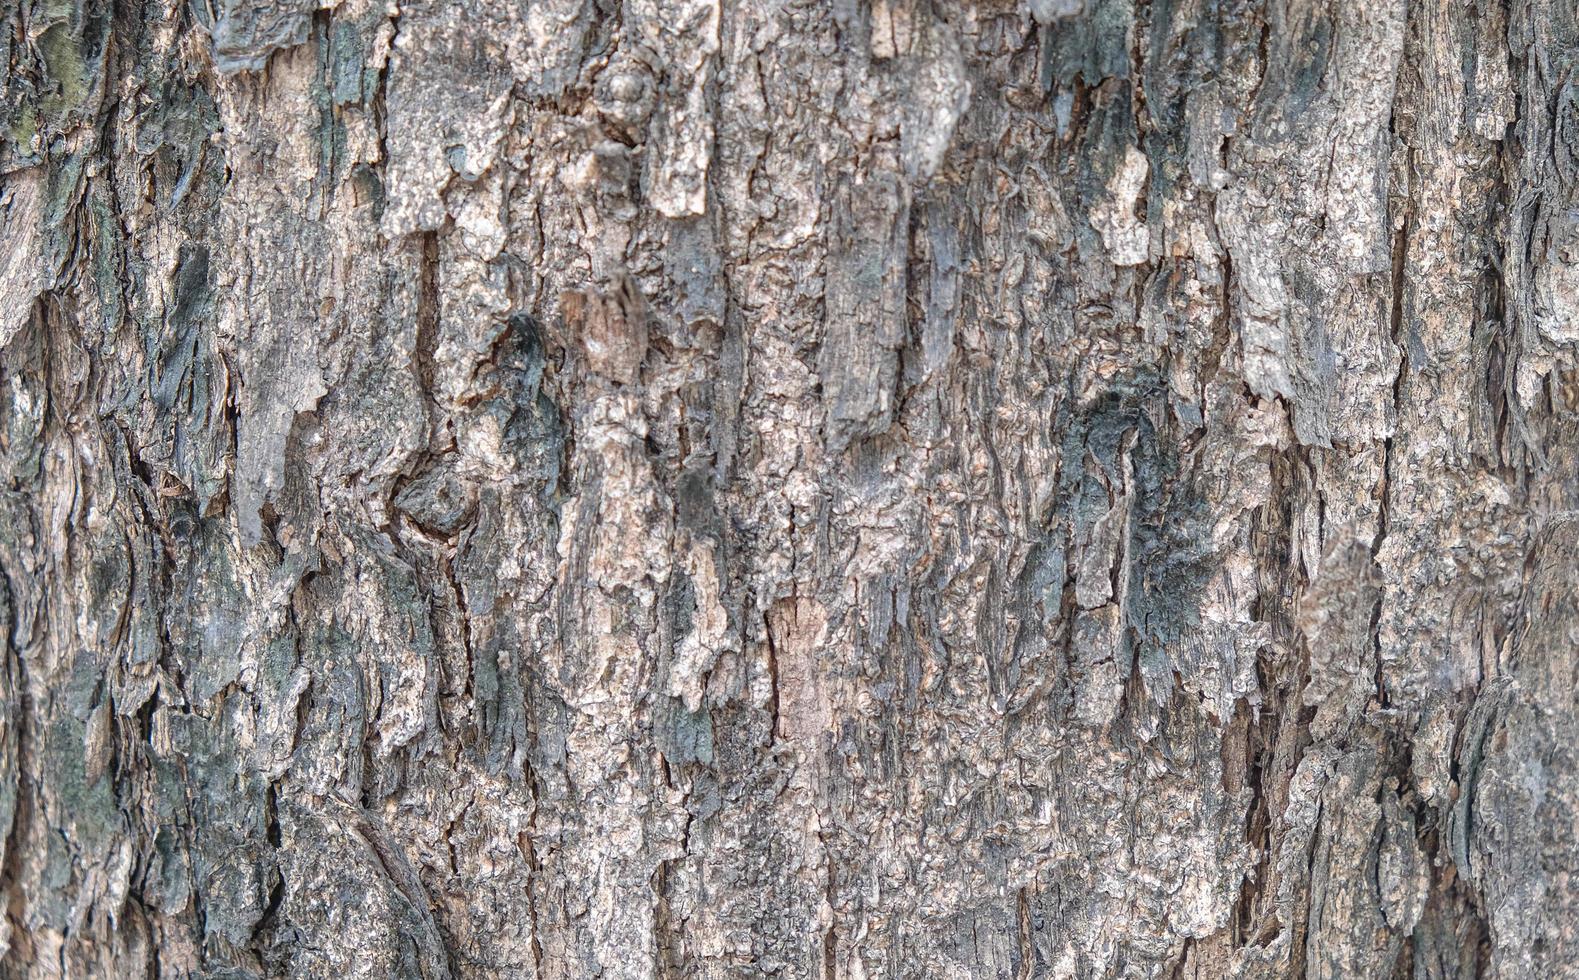 casca de árvore texturizada foto